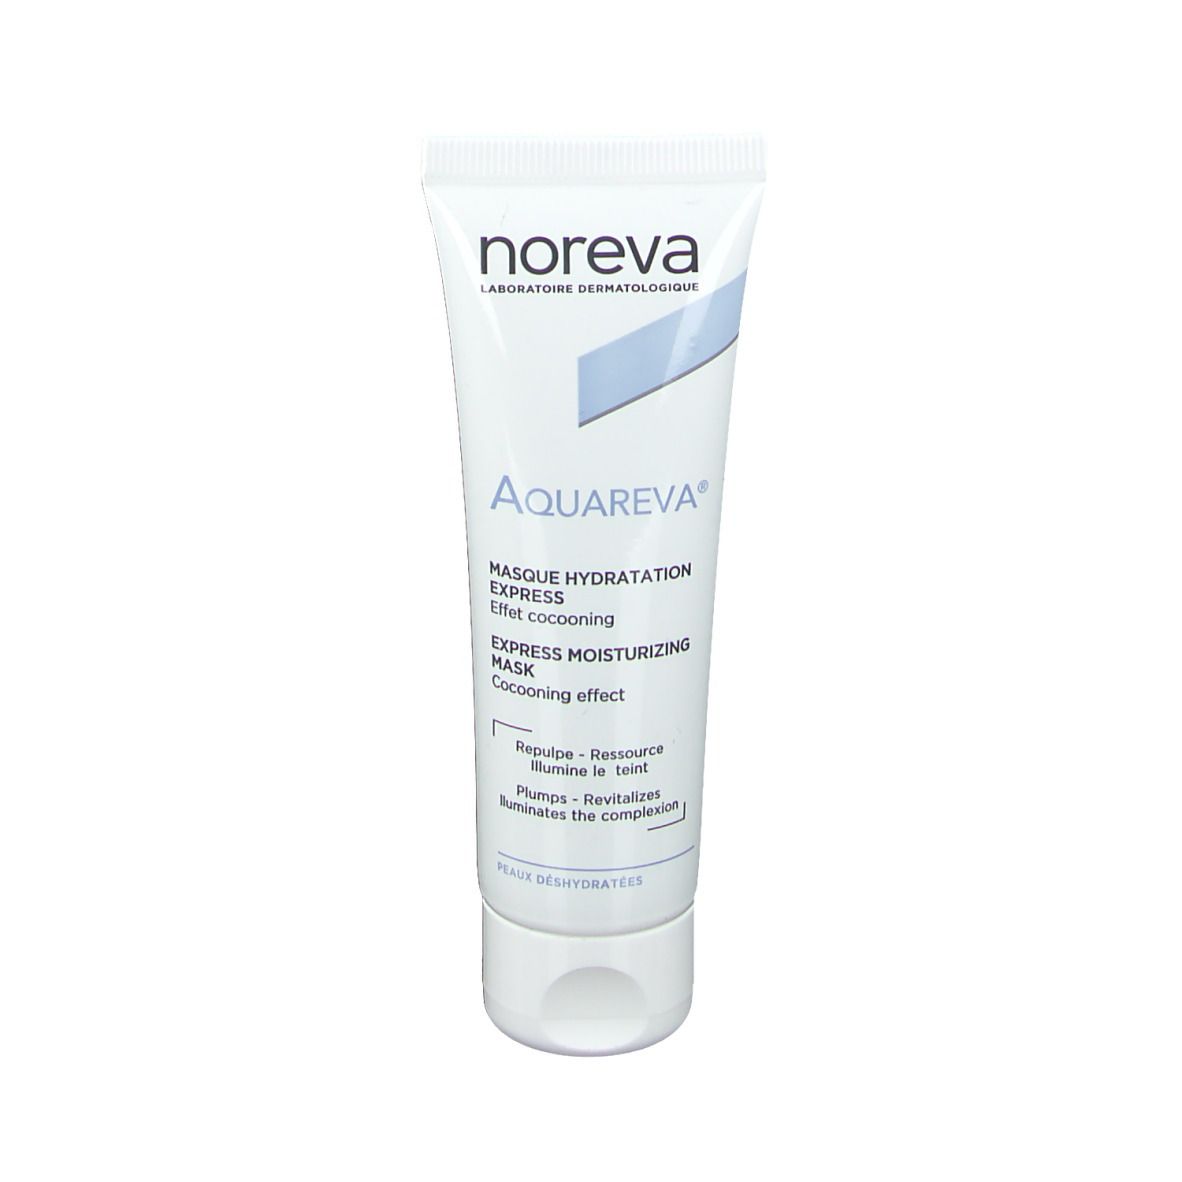 noreva Aquareva® Feuchtigkeitsmaske